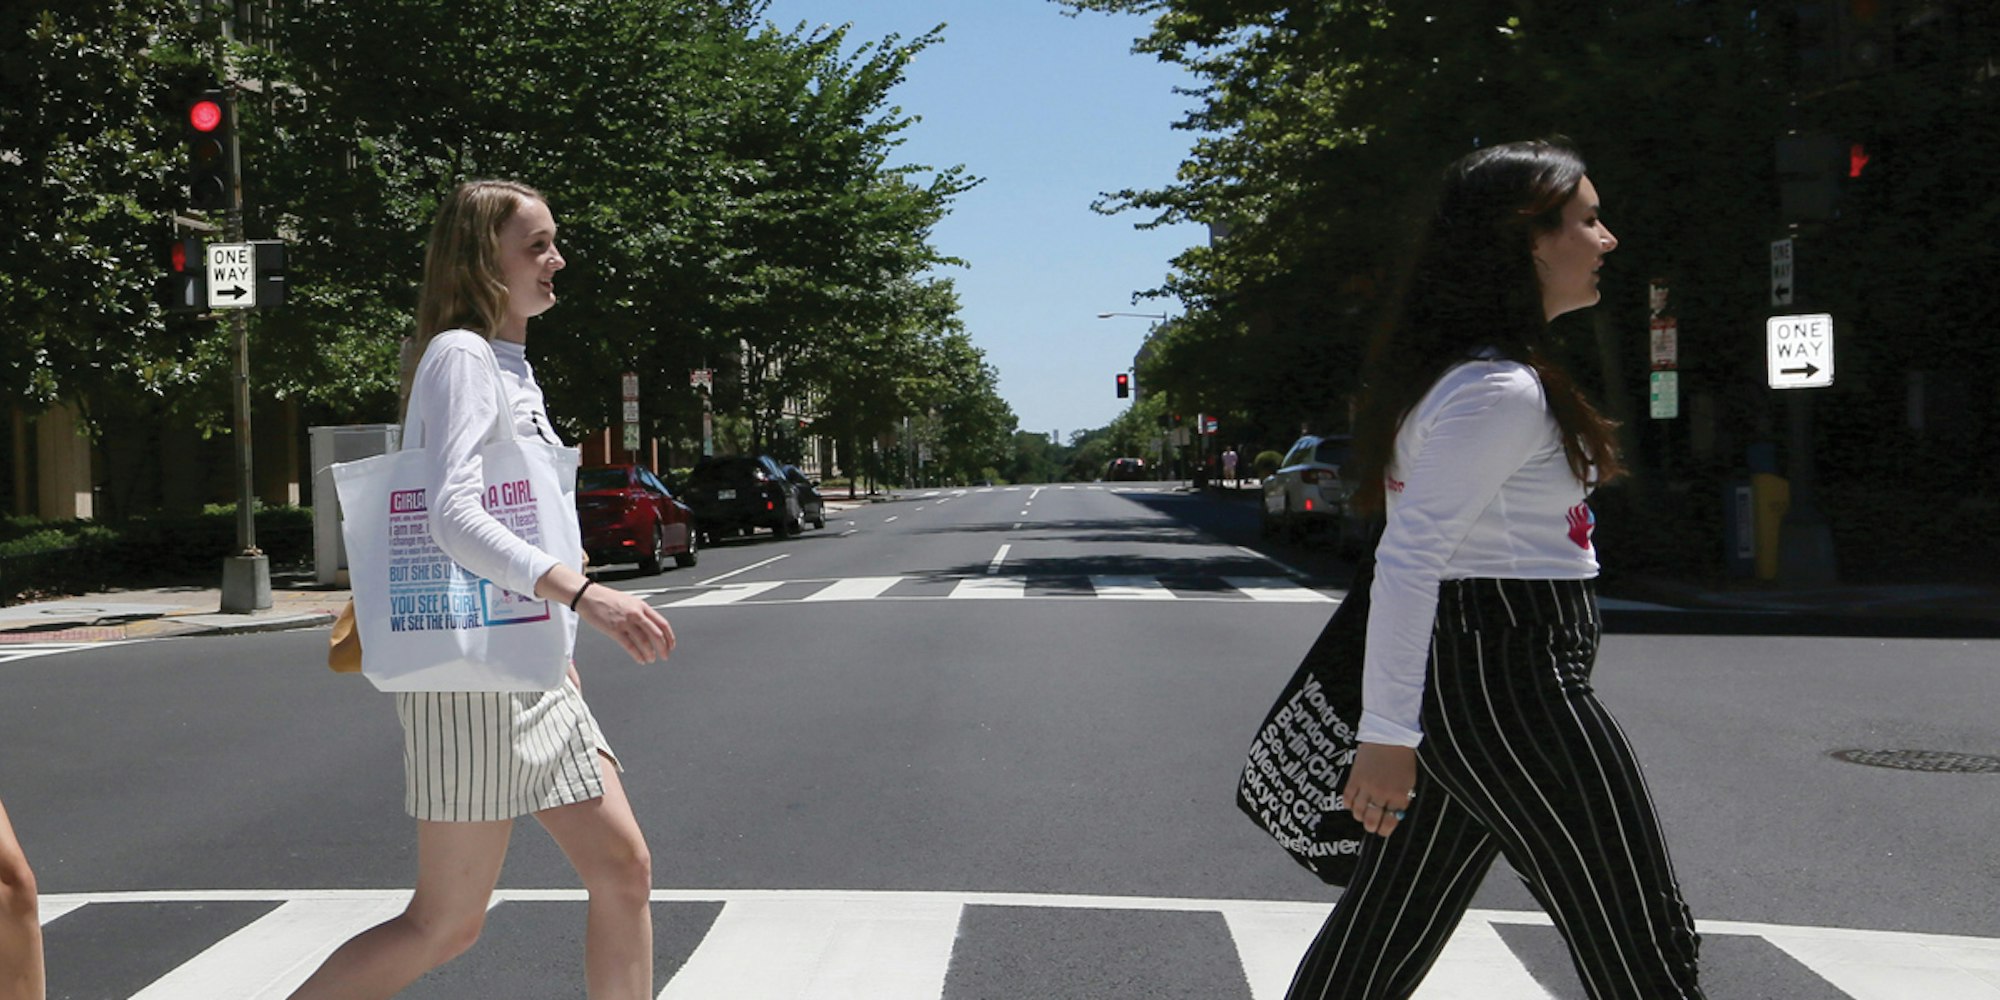 5 فتيات يعبرن الشارع واحدا تلو الآخر في مواجهة الأمام مع قميص مستشارهن المراهق على